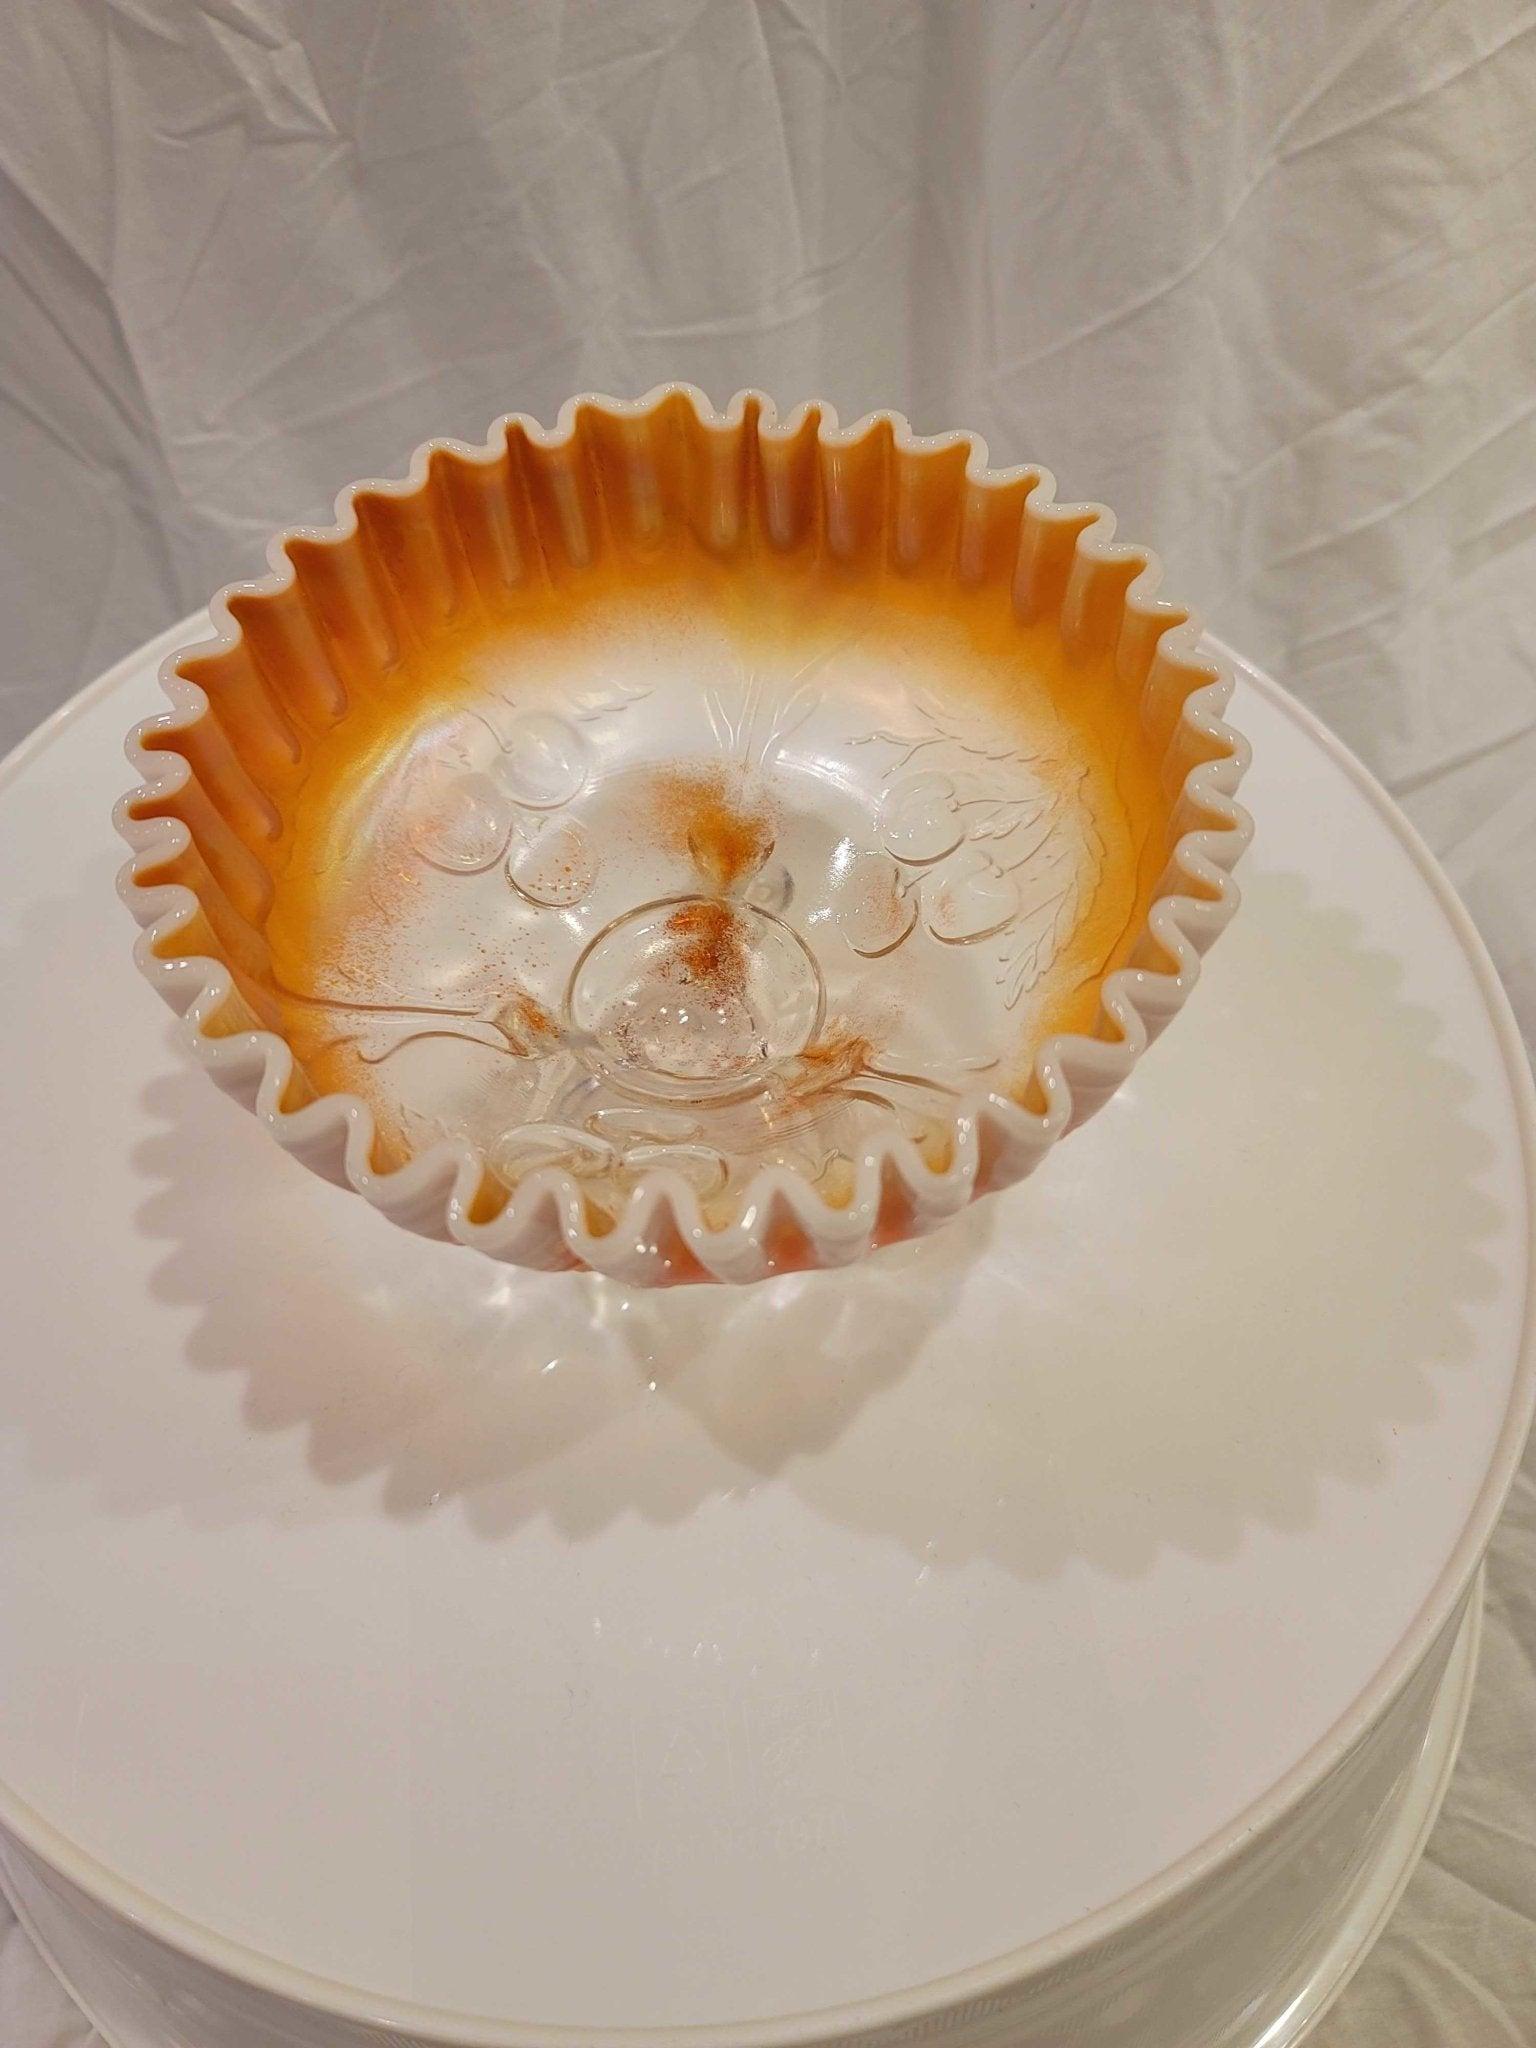 Einzigartige weiße und orangefarbene (Pfirsichglas) antike gefaltete Schale, die auf 3 Beinen steht. Auf der Unterseite befinden sich erhabene Glasdetails von Kirschen, die bis zum inneren Boden der Schale durchscheinen. Einwandfrei.

Mit einem